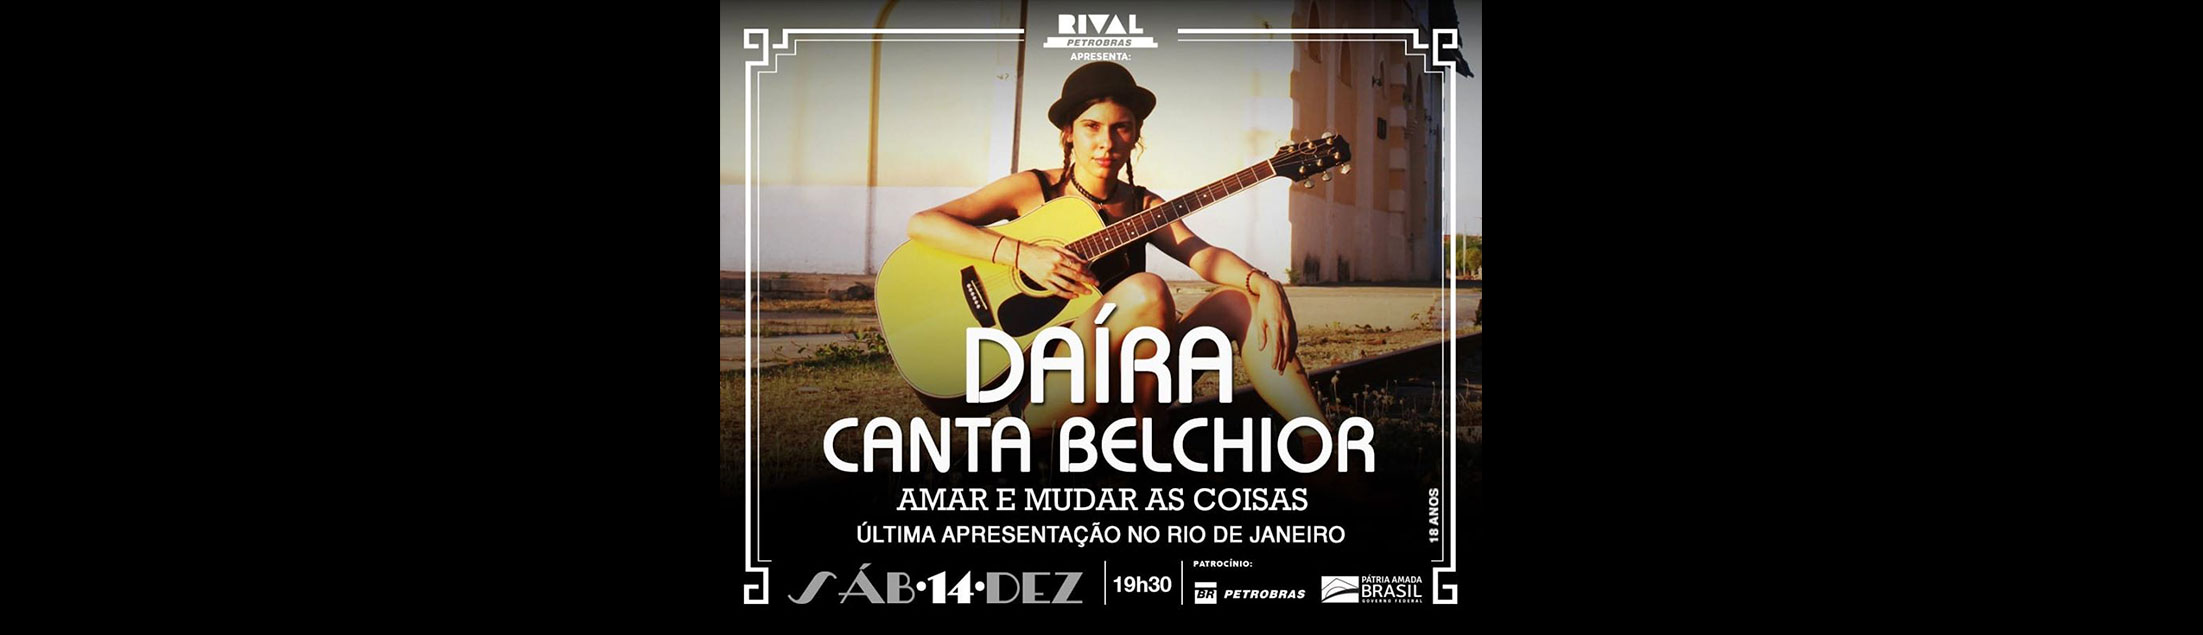 Daíra canta Belchior em show 'Amar e Mudar as Coisas' no Teatro Rival